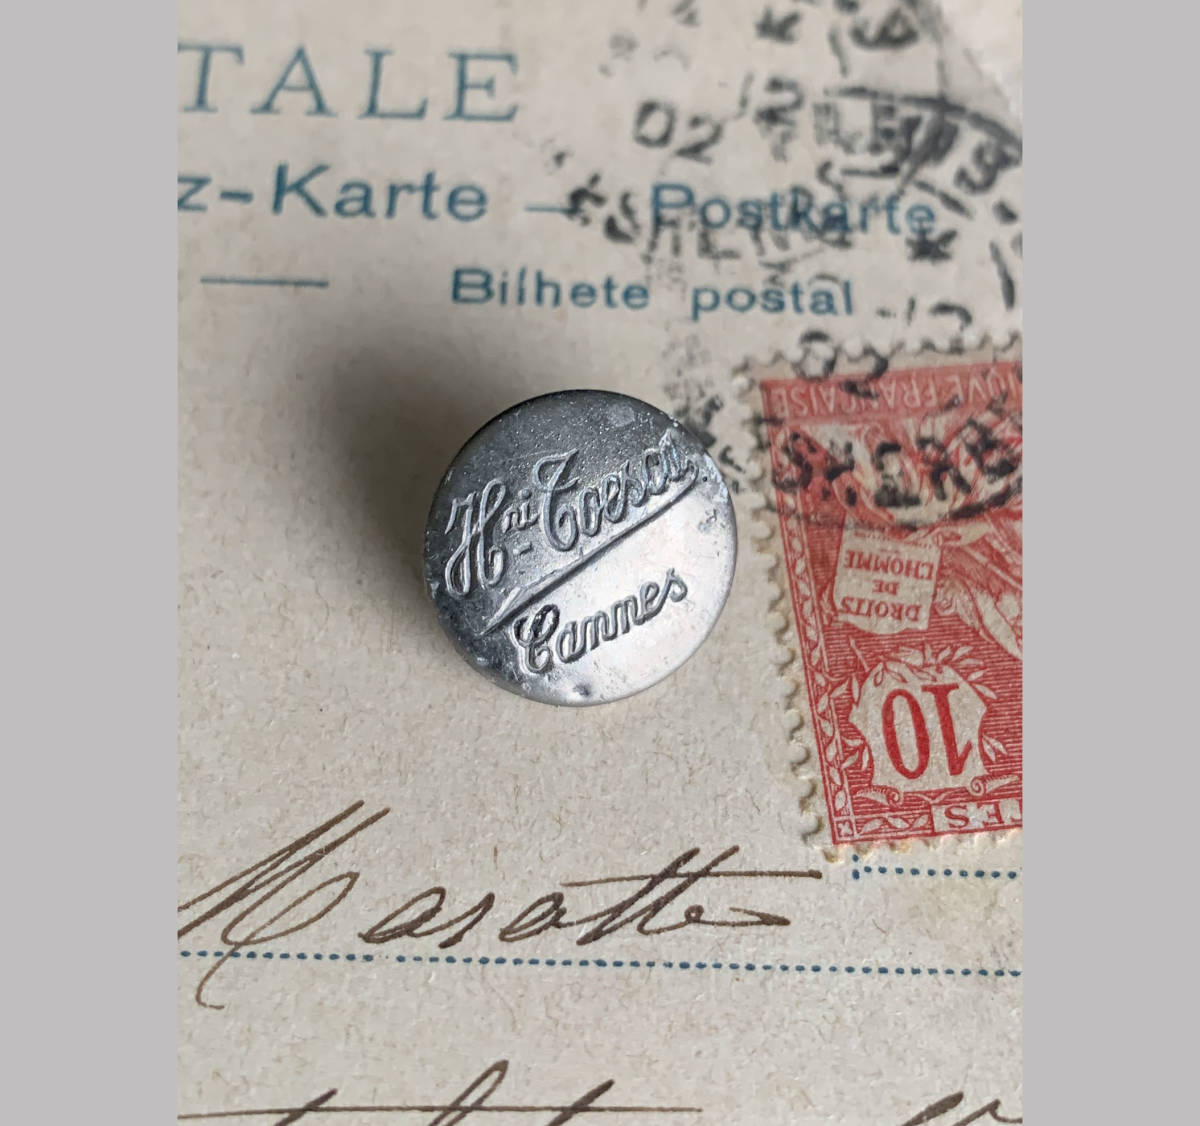 フランス パリ 1900-40s ホワイト メタル ボタン φ14mm 欧州 古着 ハンティング ジャケット 刺繍 裁縫 ヴィンテージ アンティーク 5_画像1